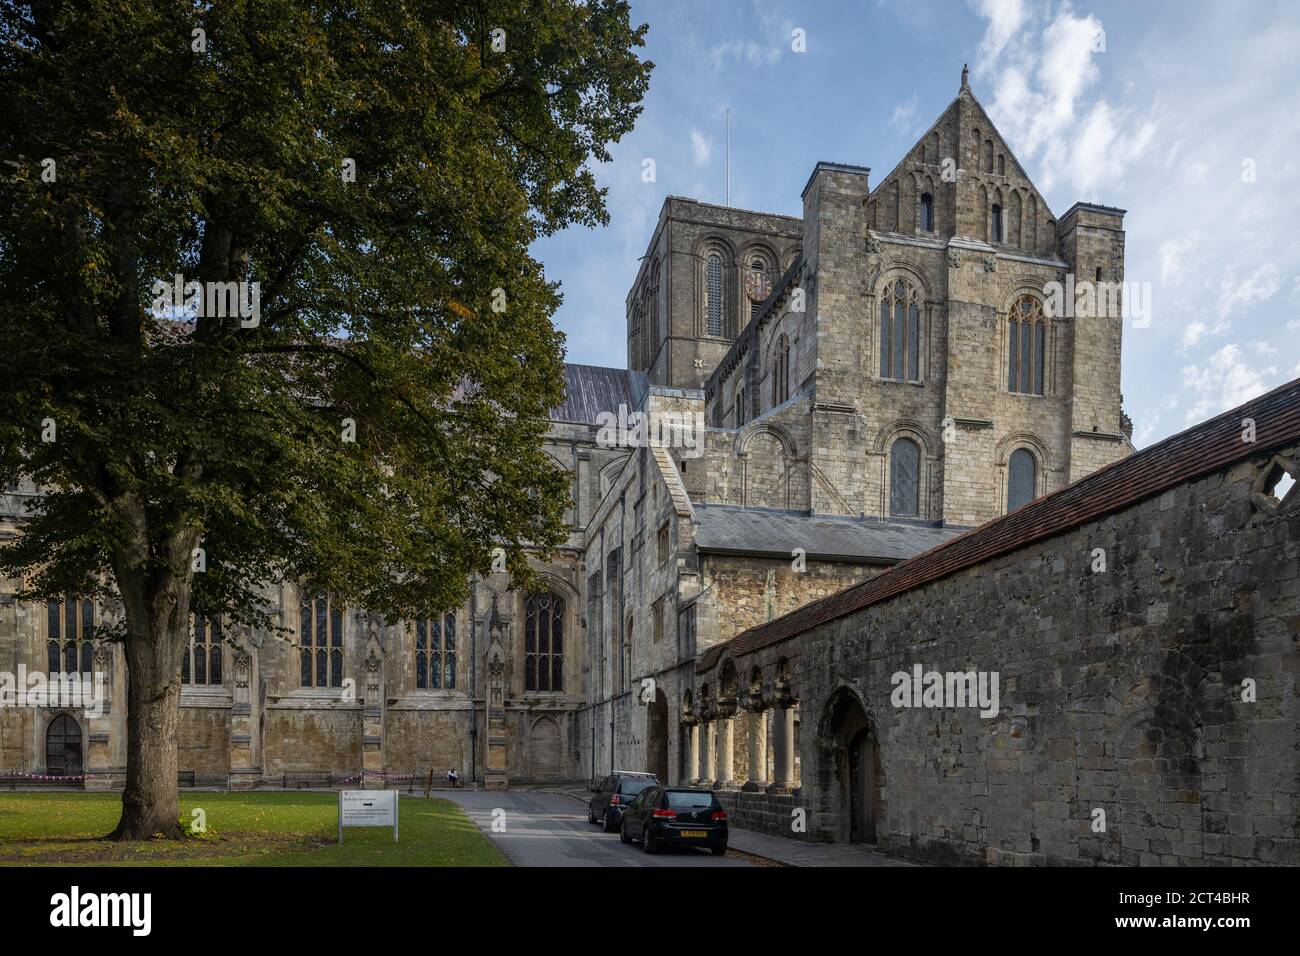 La cathédrale de Winchester, Winchester, Hampshire, England, UK Banque D'Images